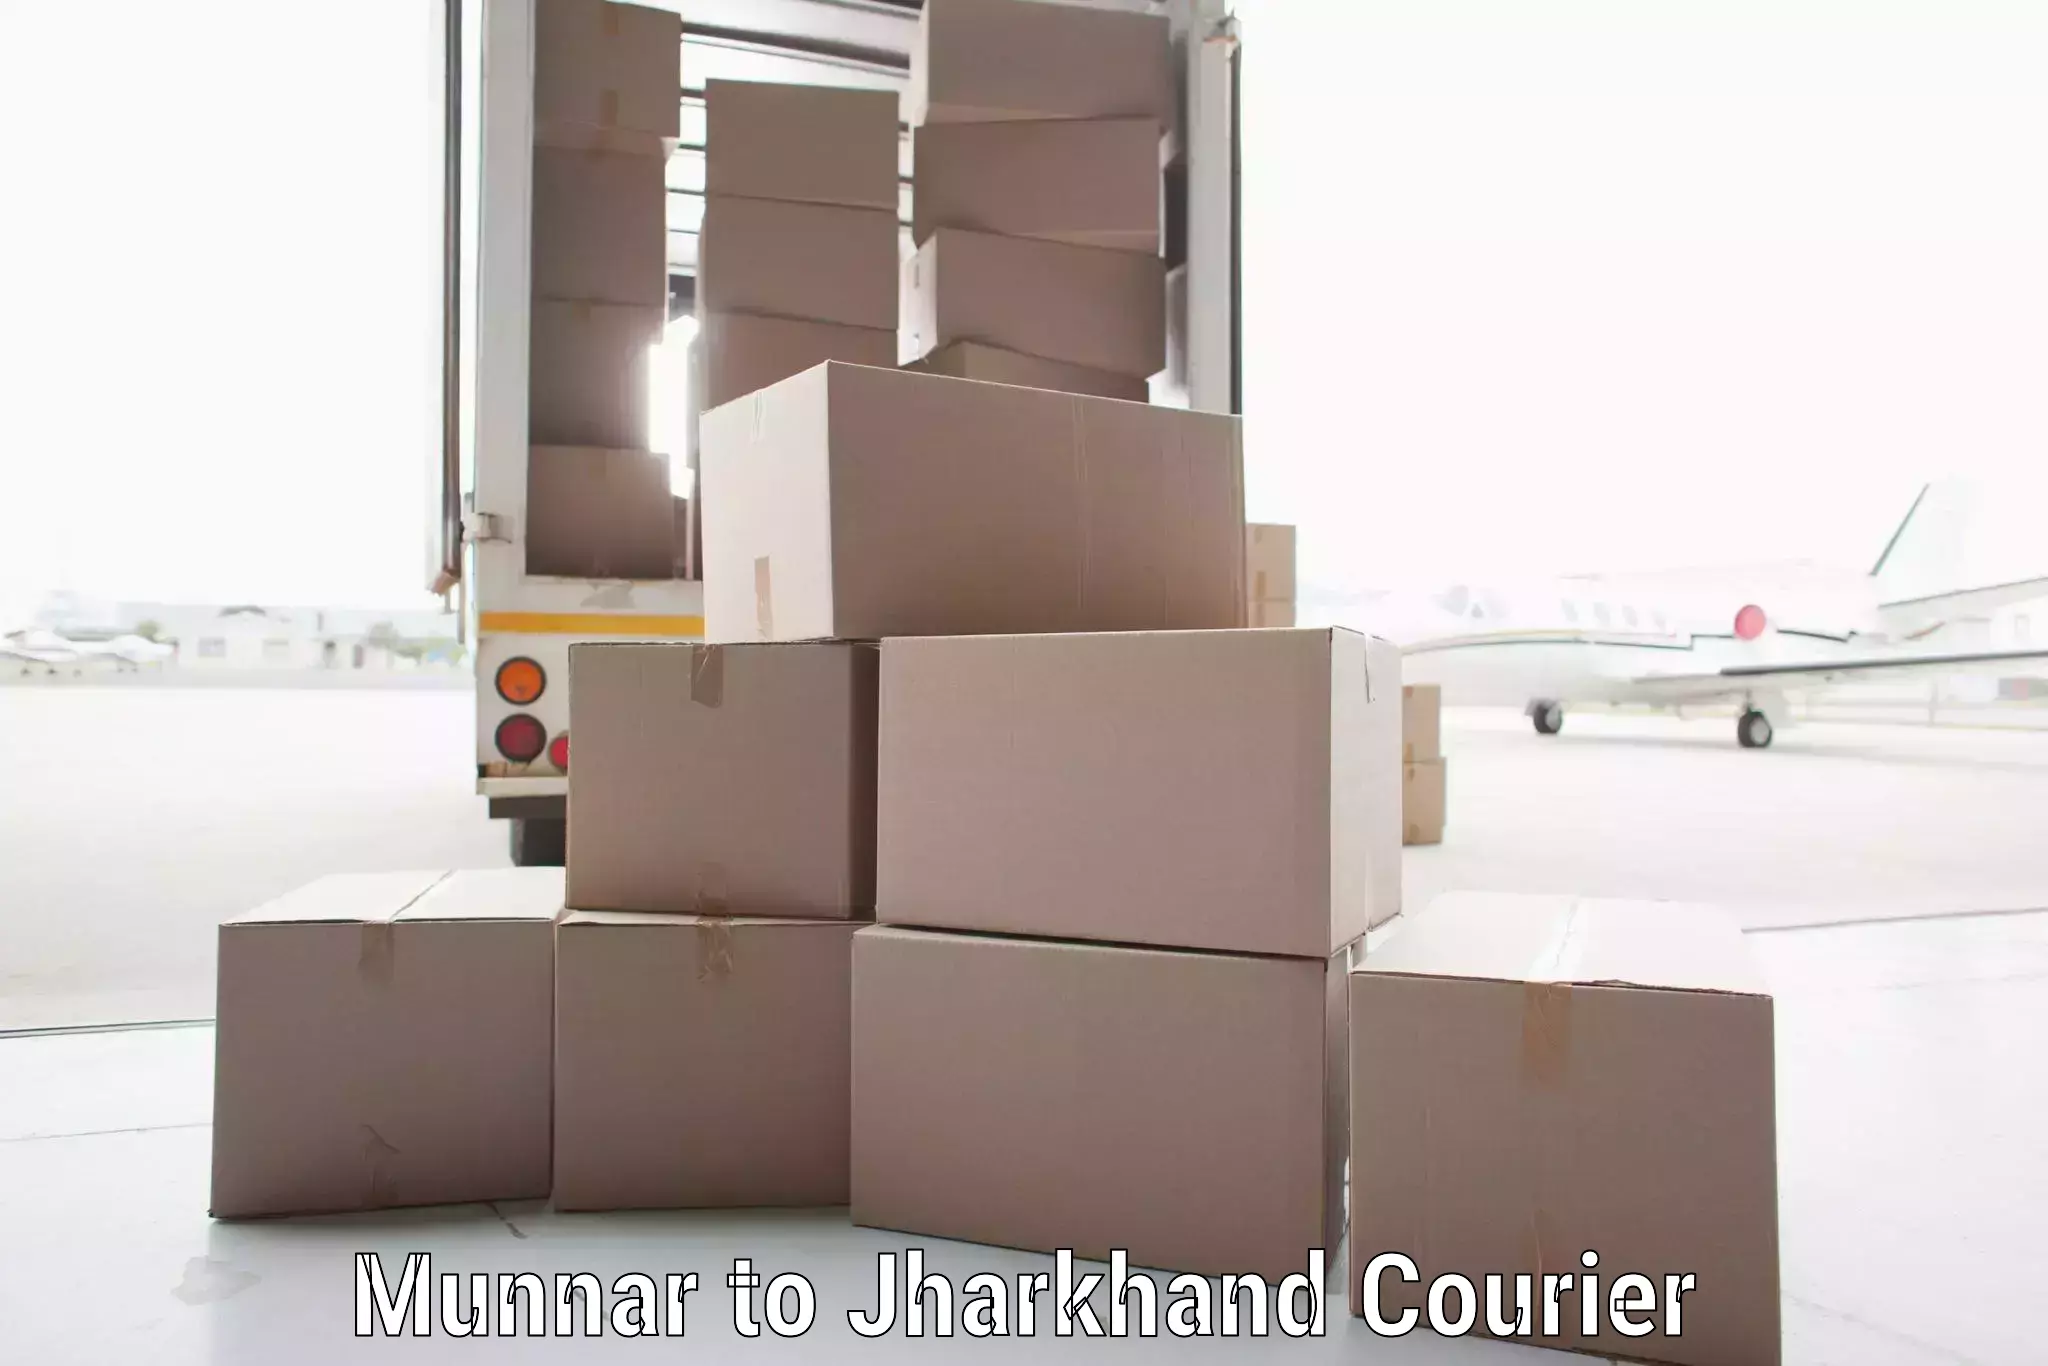 High-capacity shipping options Munnar to Seraikella